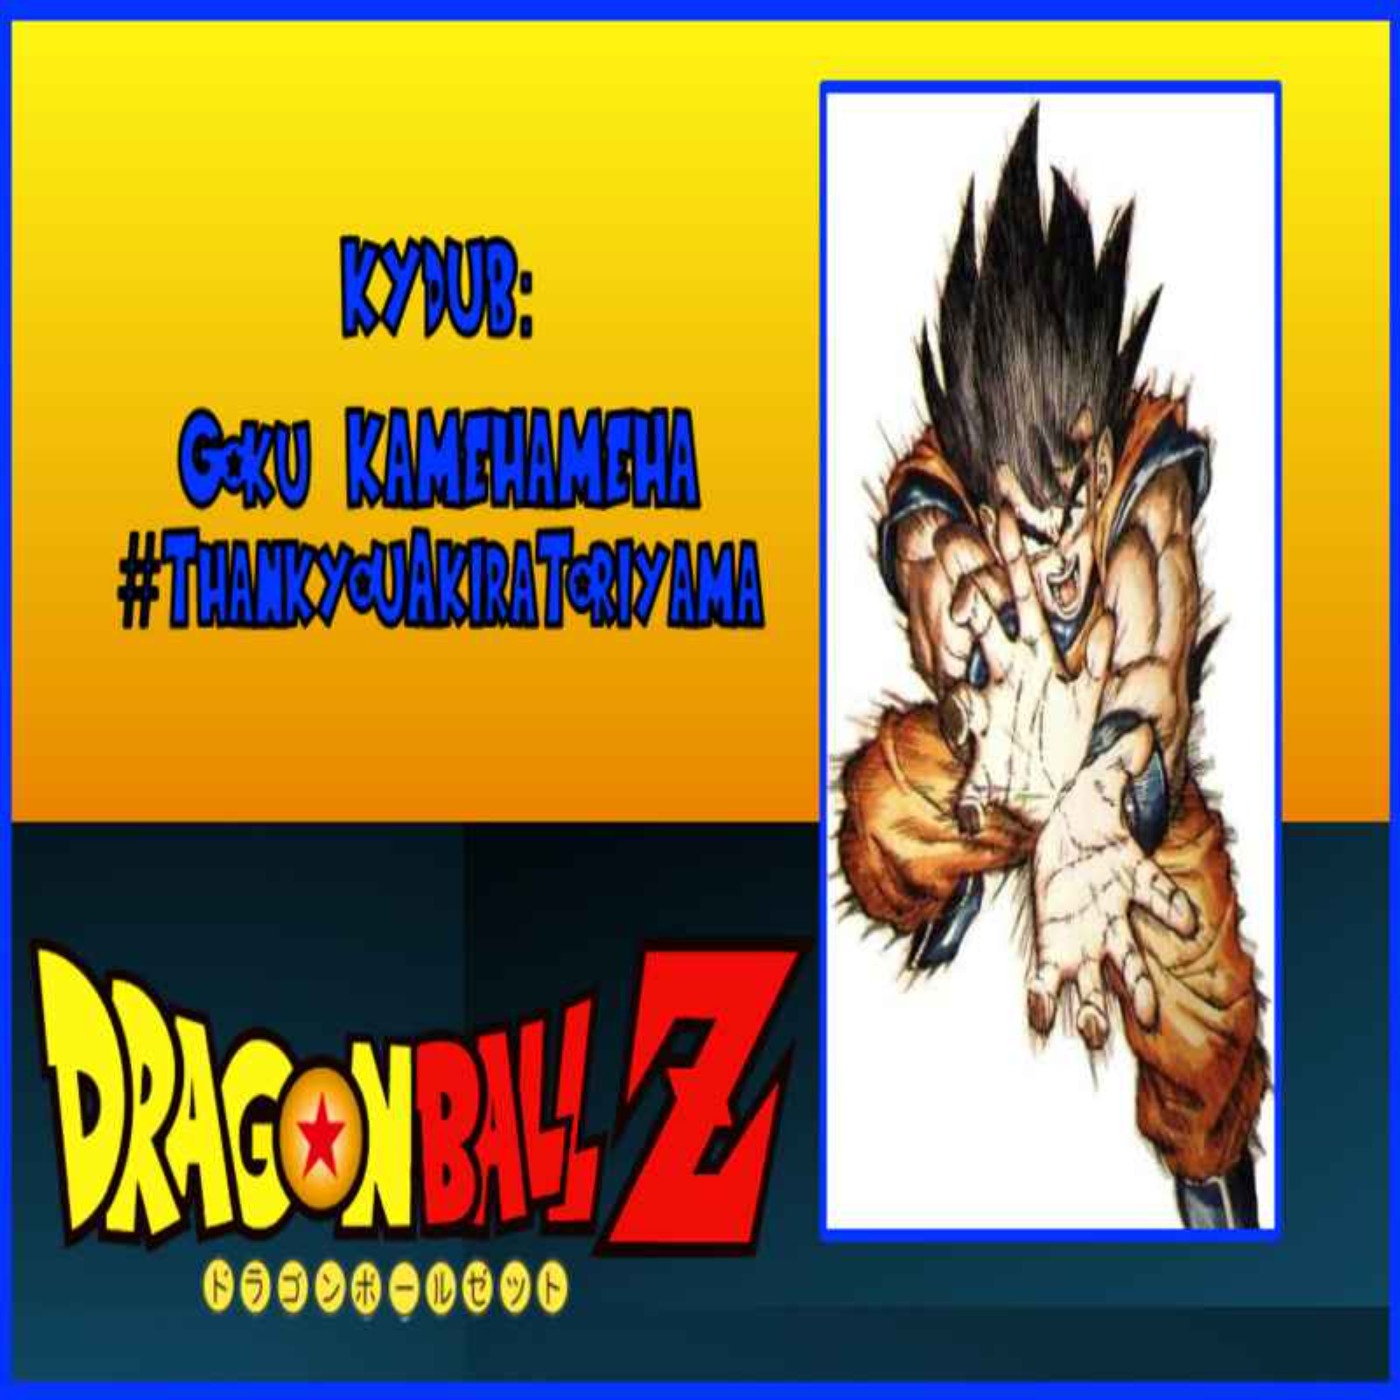 cover art for KYDUB: Goku KAMEHAMEHA #ThankyouAkiraToriyama